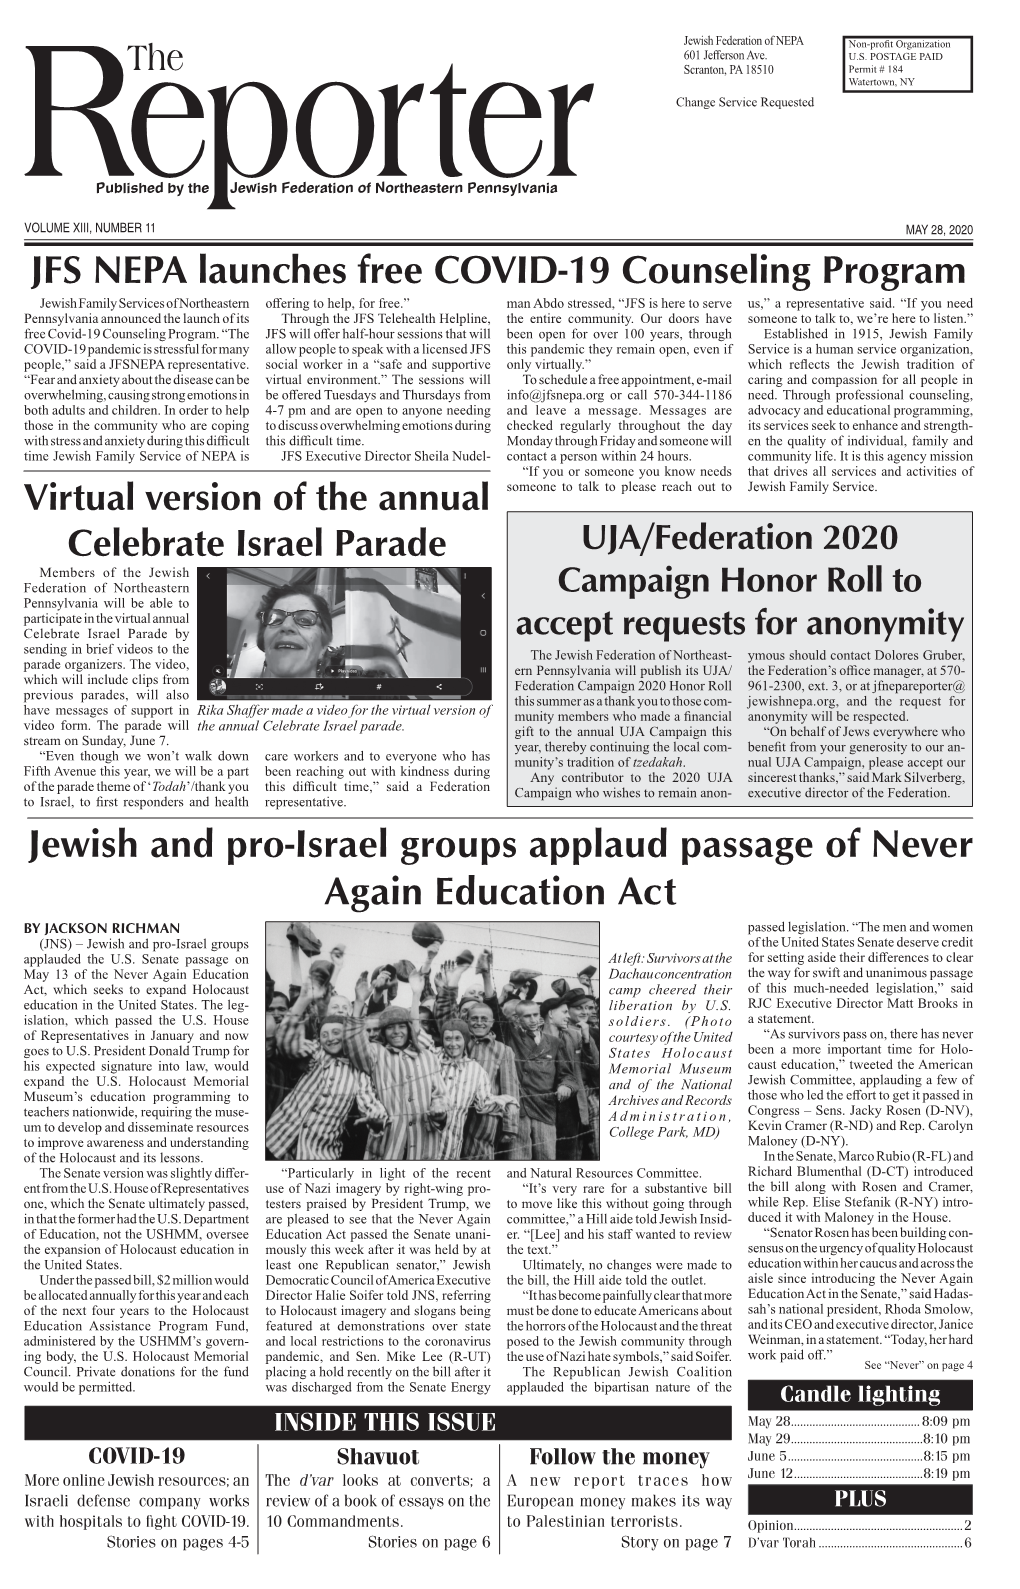 JFS NEPA Launches Free COVID-19 Counseling Program Jewish And